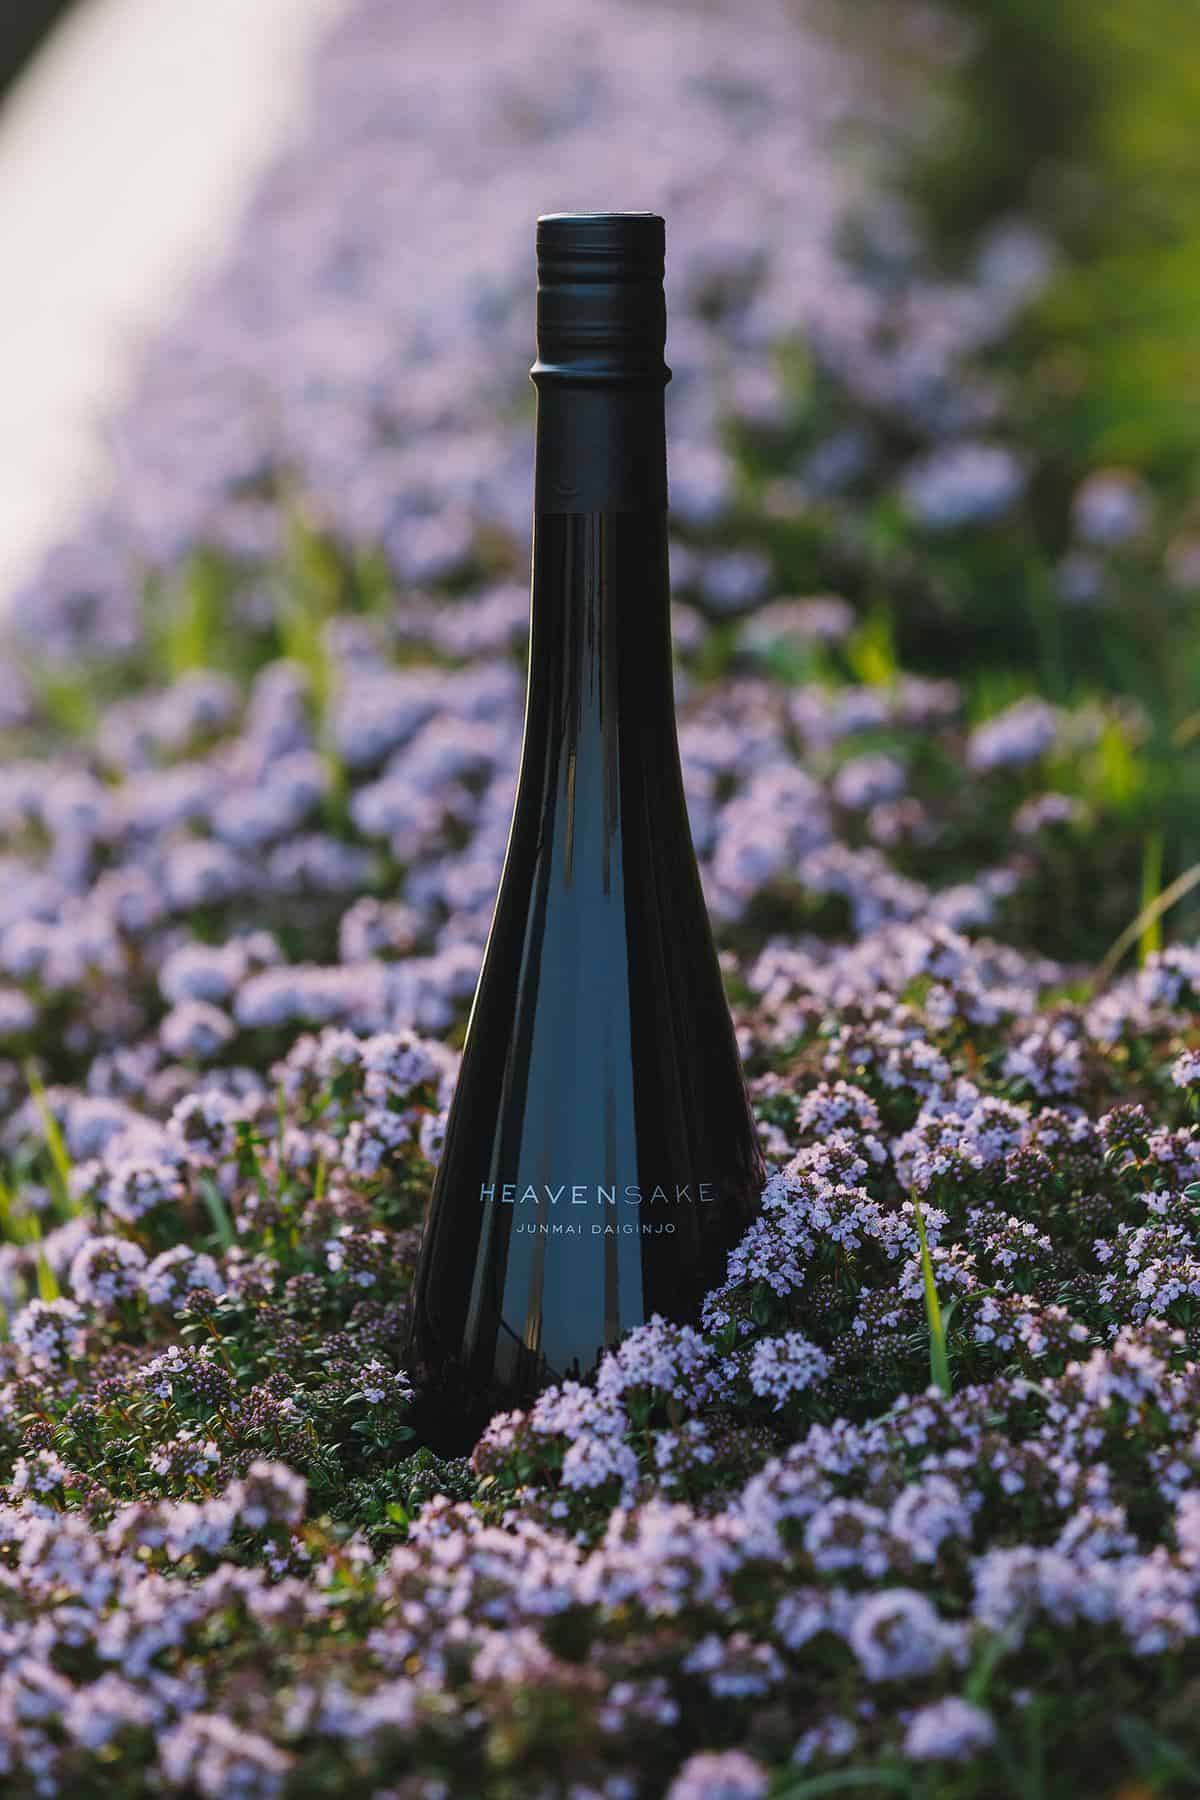 HeavenSake Junmai Daiginjo bottle in a field of purple flowers